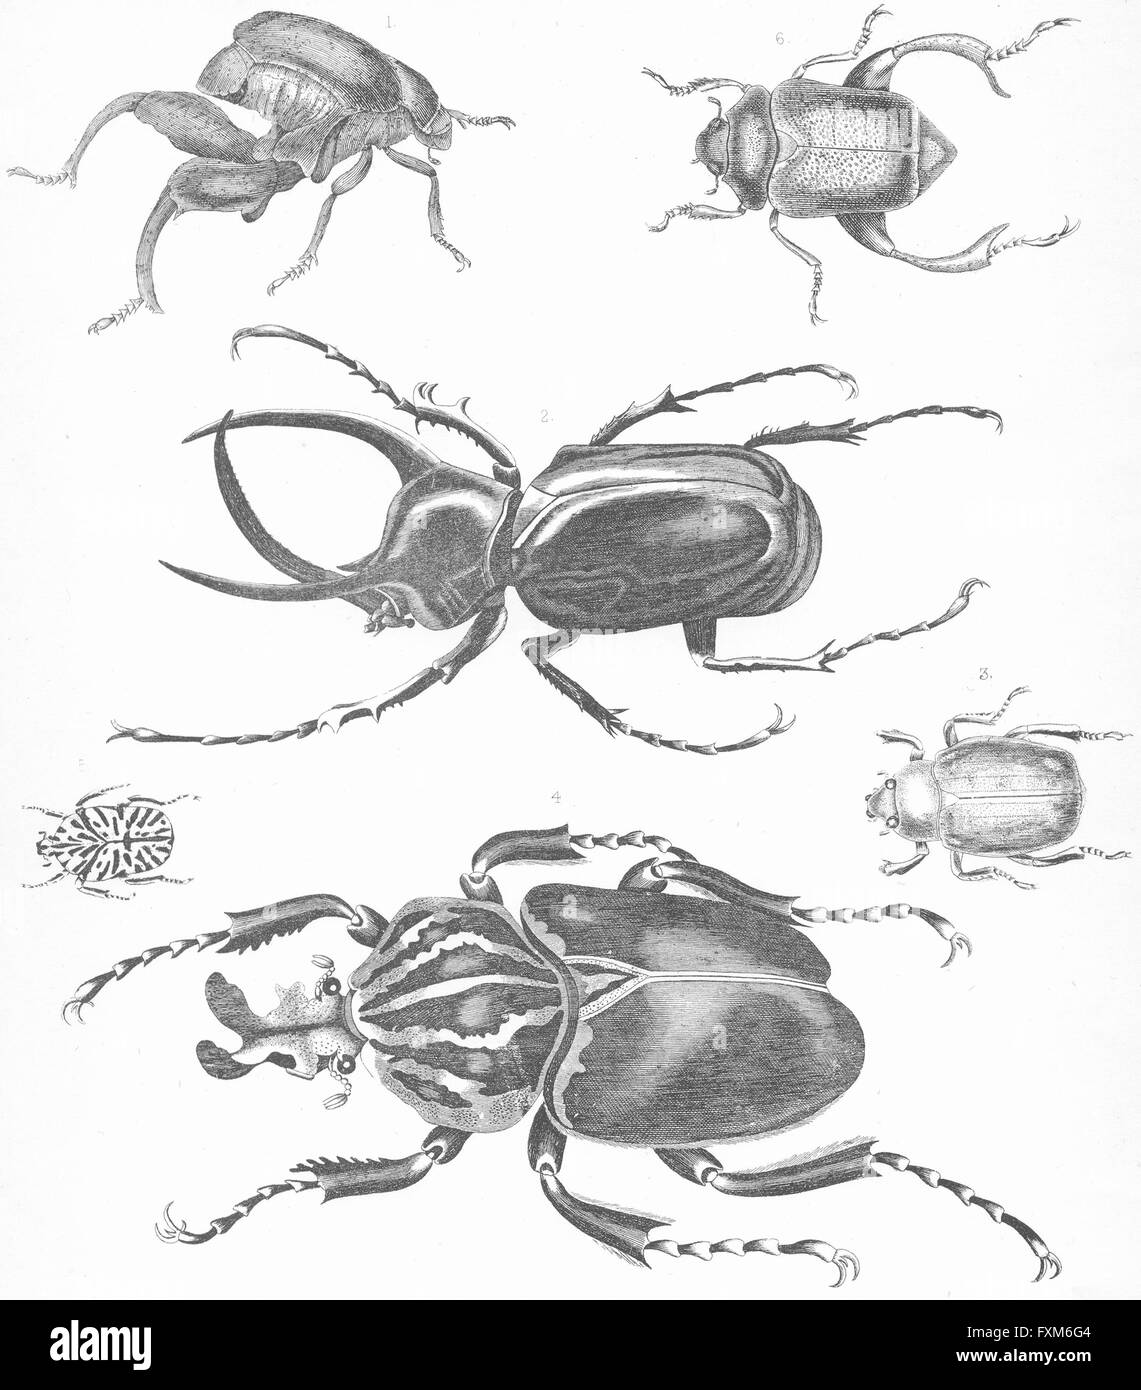 Los escarabajos: canguro jeroglífico peruano Dorado, grabado antiguo c1849 Foto de stock